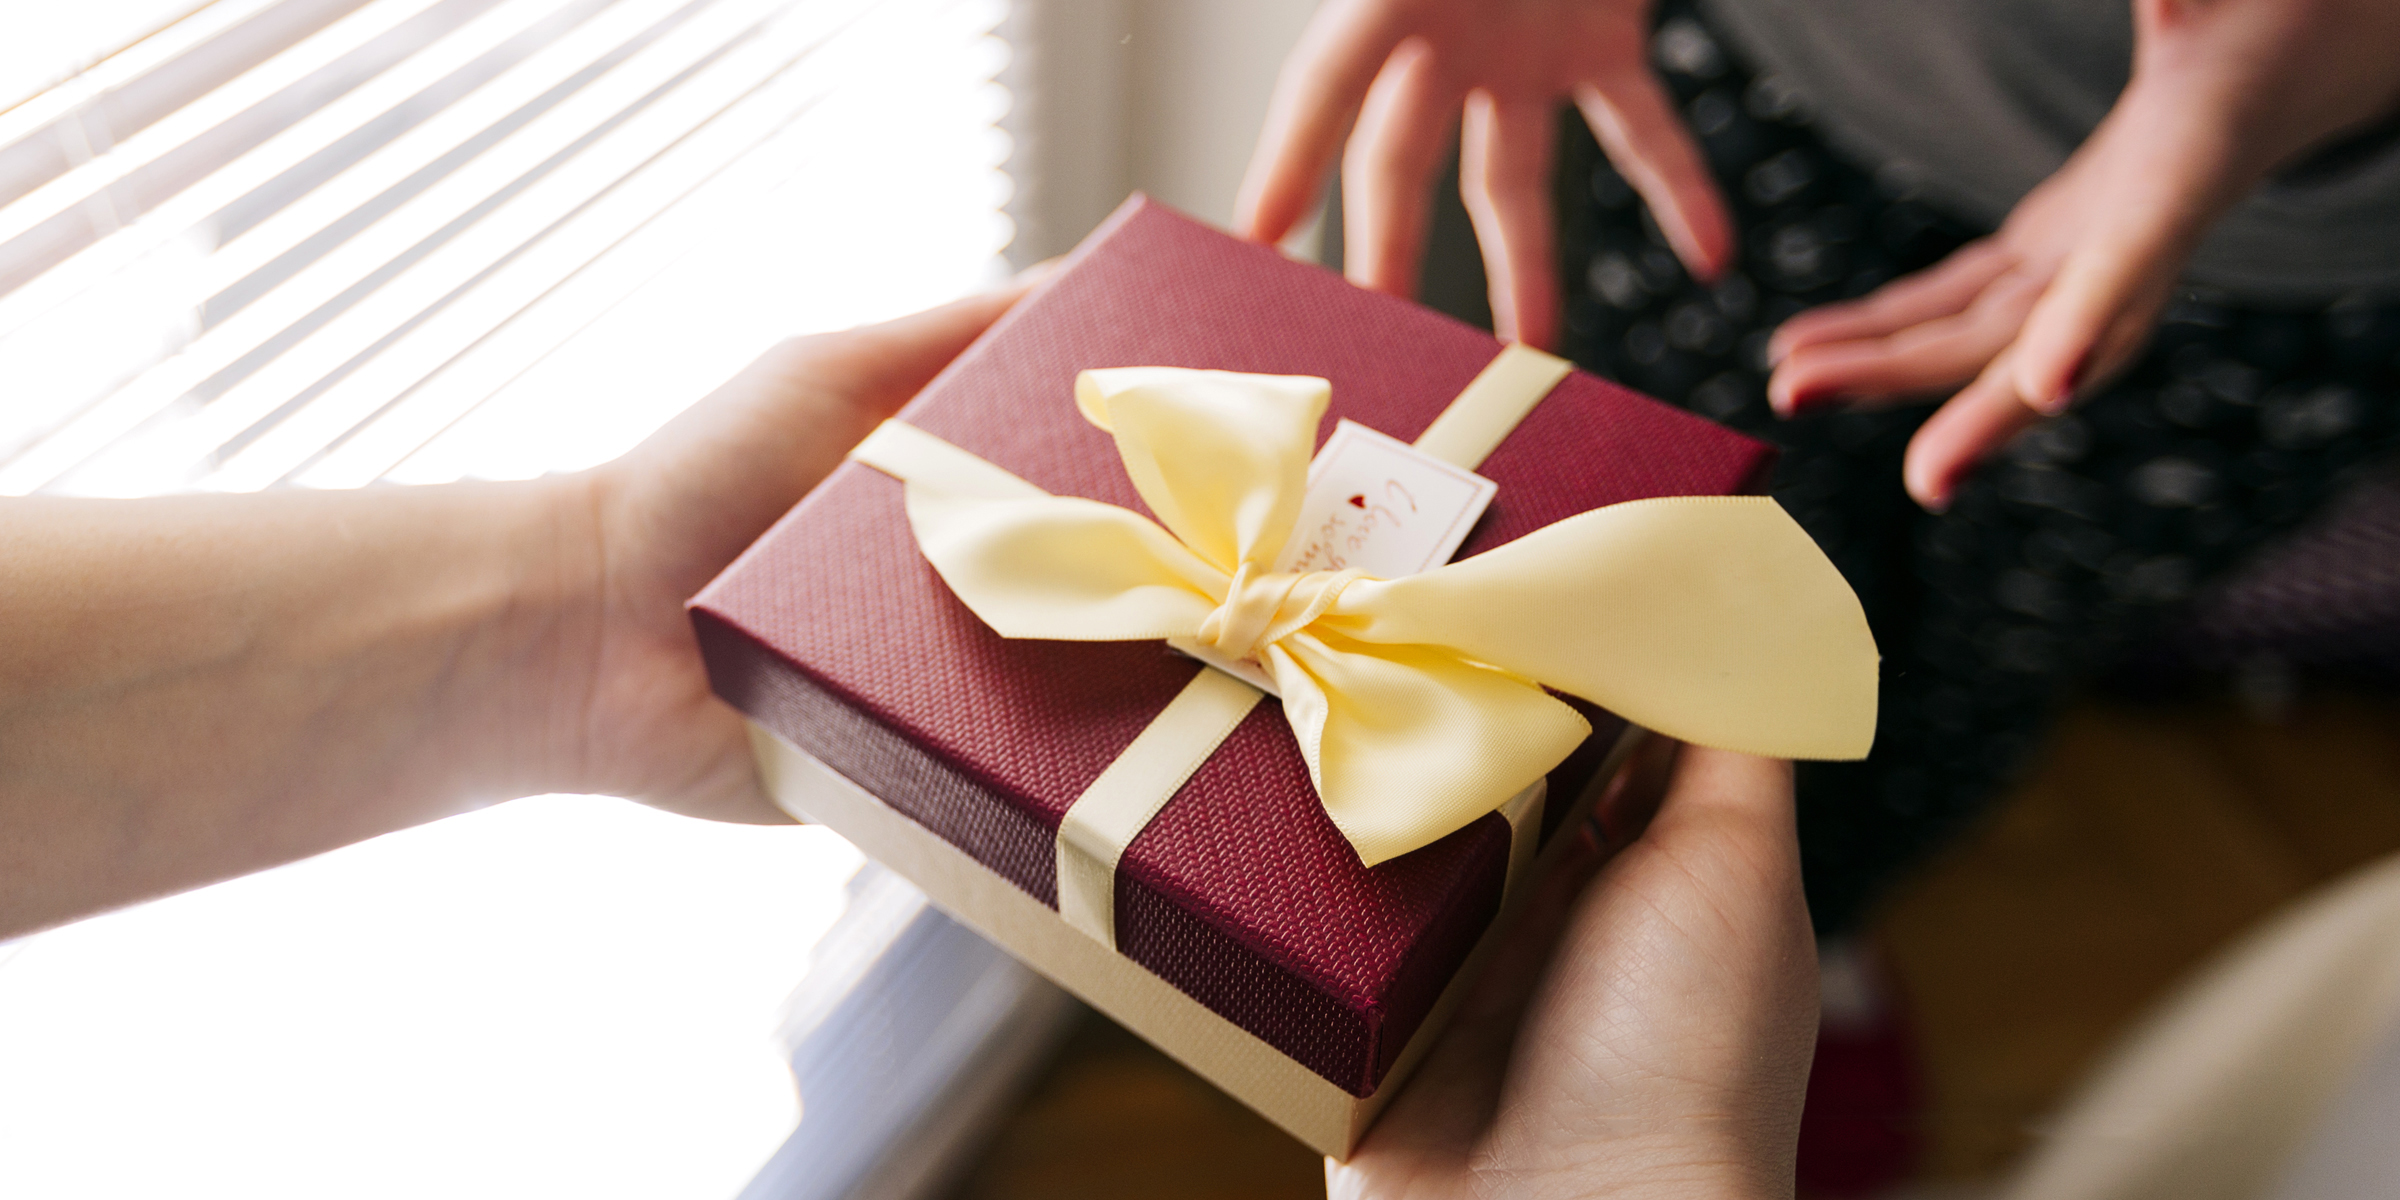 Un homme offre un cadeau à une femme | Source : Shutterstock